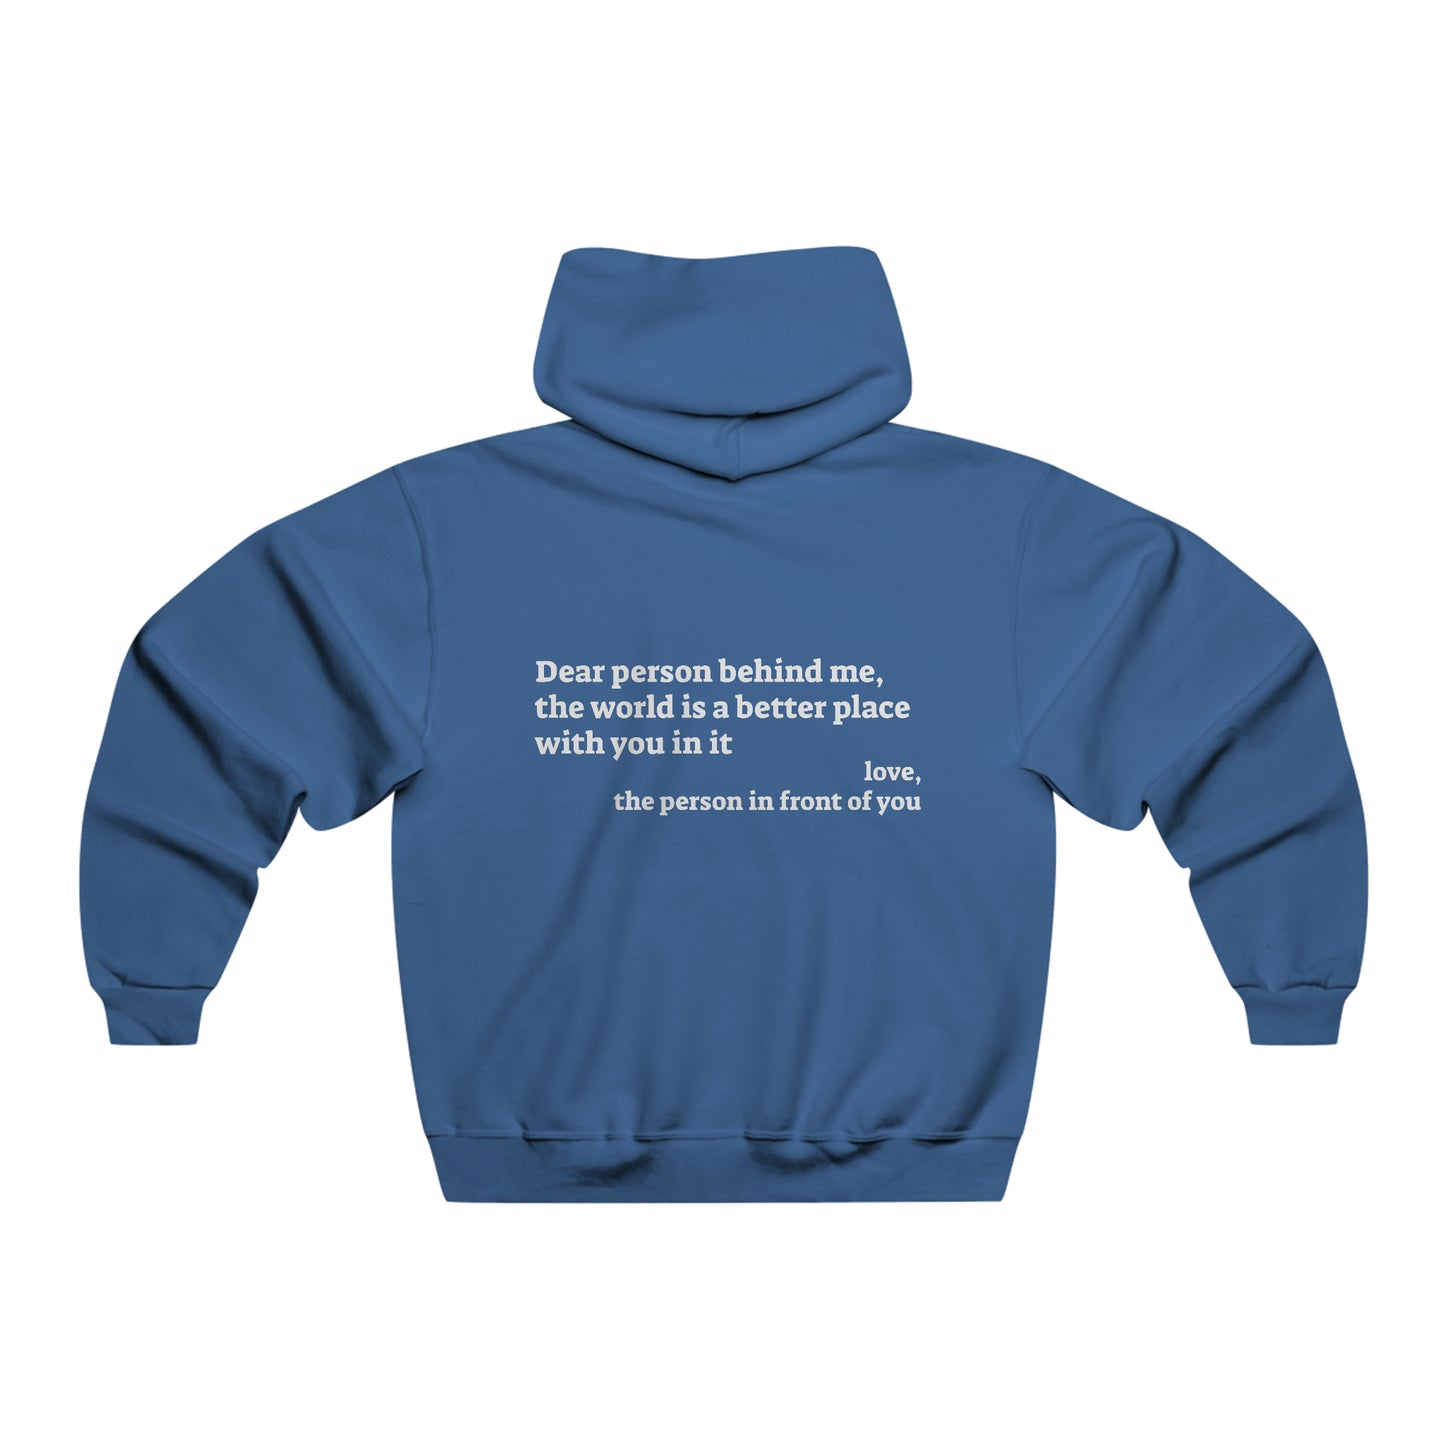 You are enough - Men's NUBLEND® Sweatshirt Hoodie